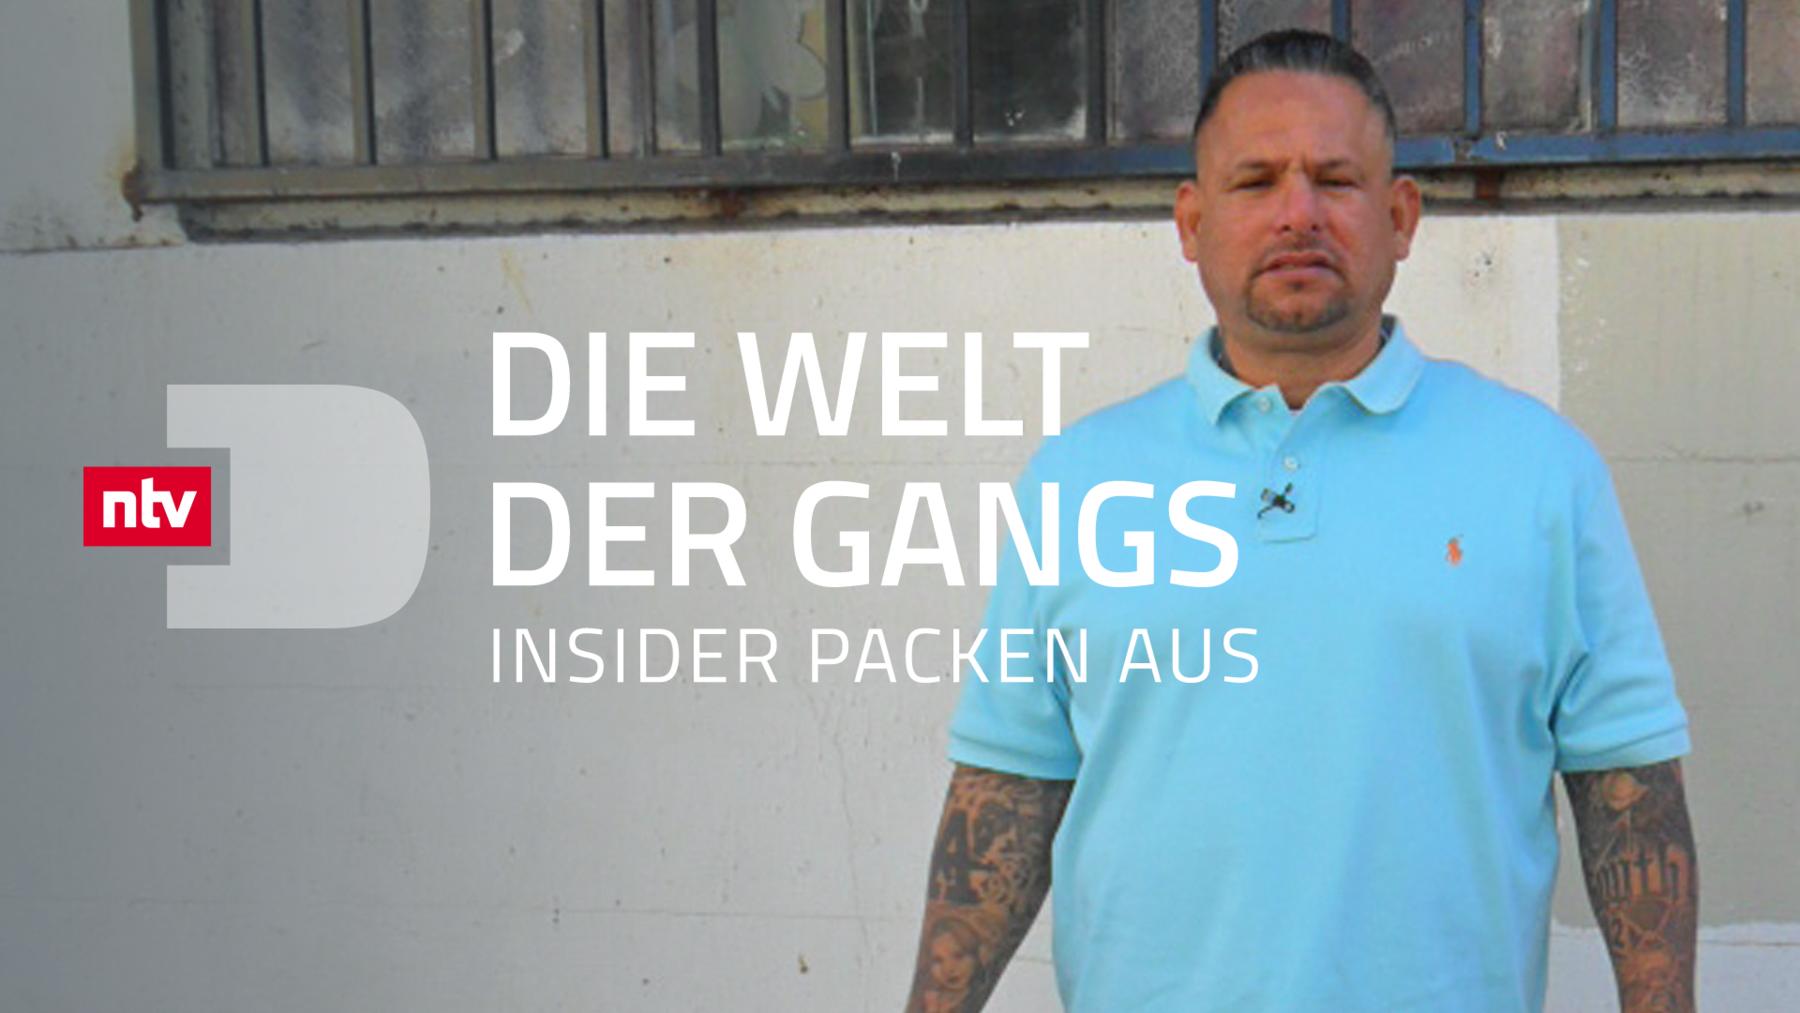 Die Welt der Gangs - Insider packen aus